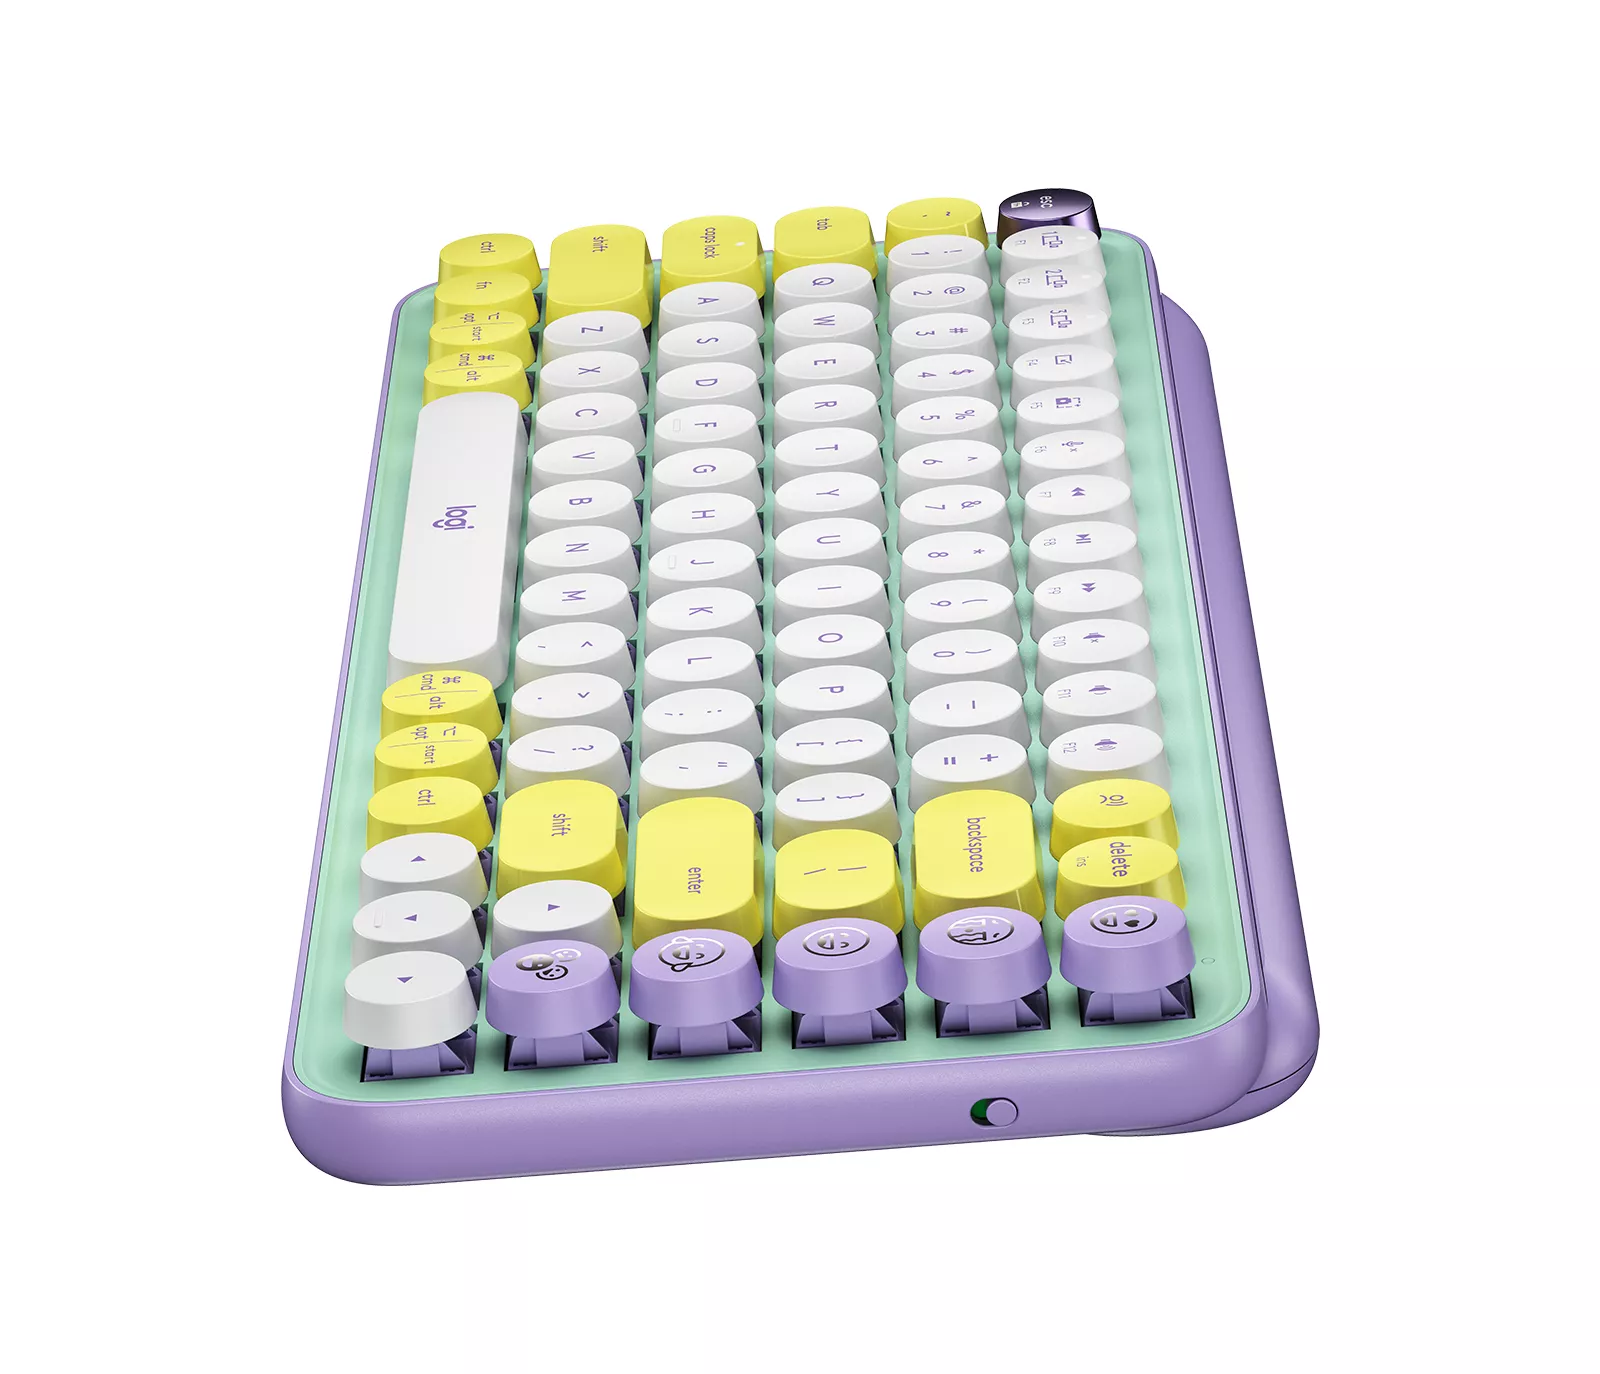 Vente LOGITECH POP Keys Wireless Mechanical Keyboard With Logitech au meilleur prix - visuel 4